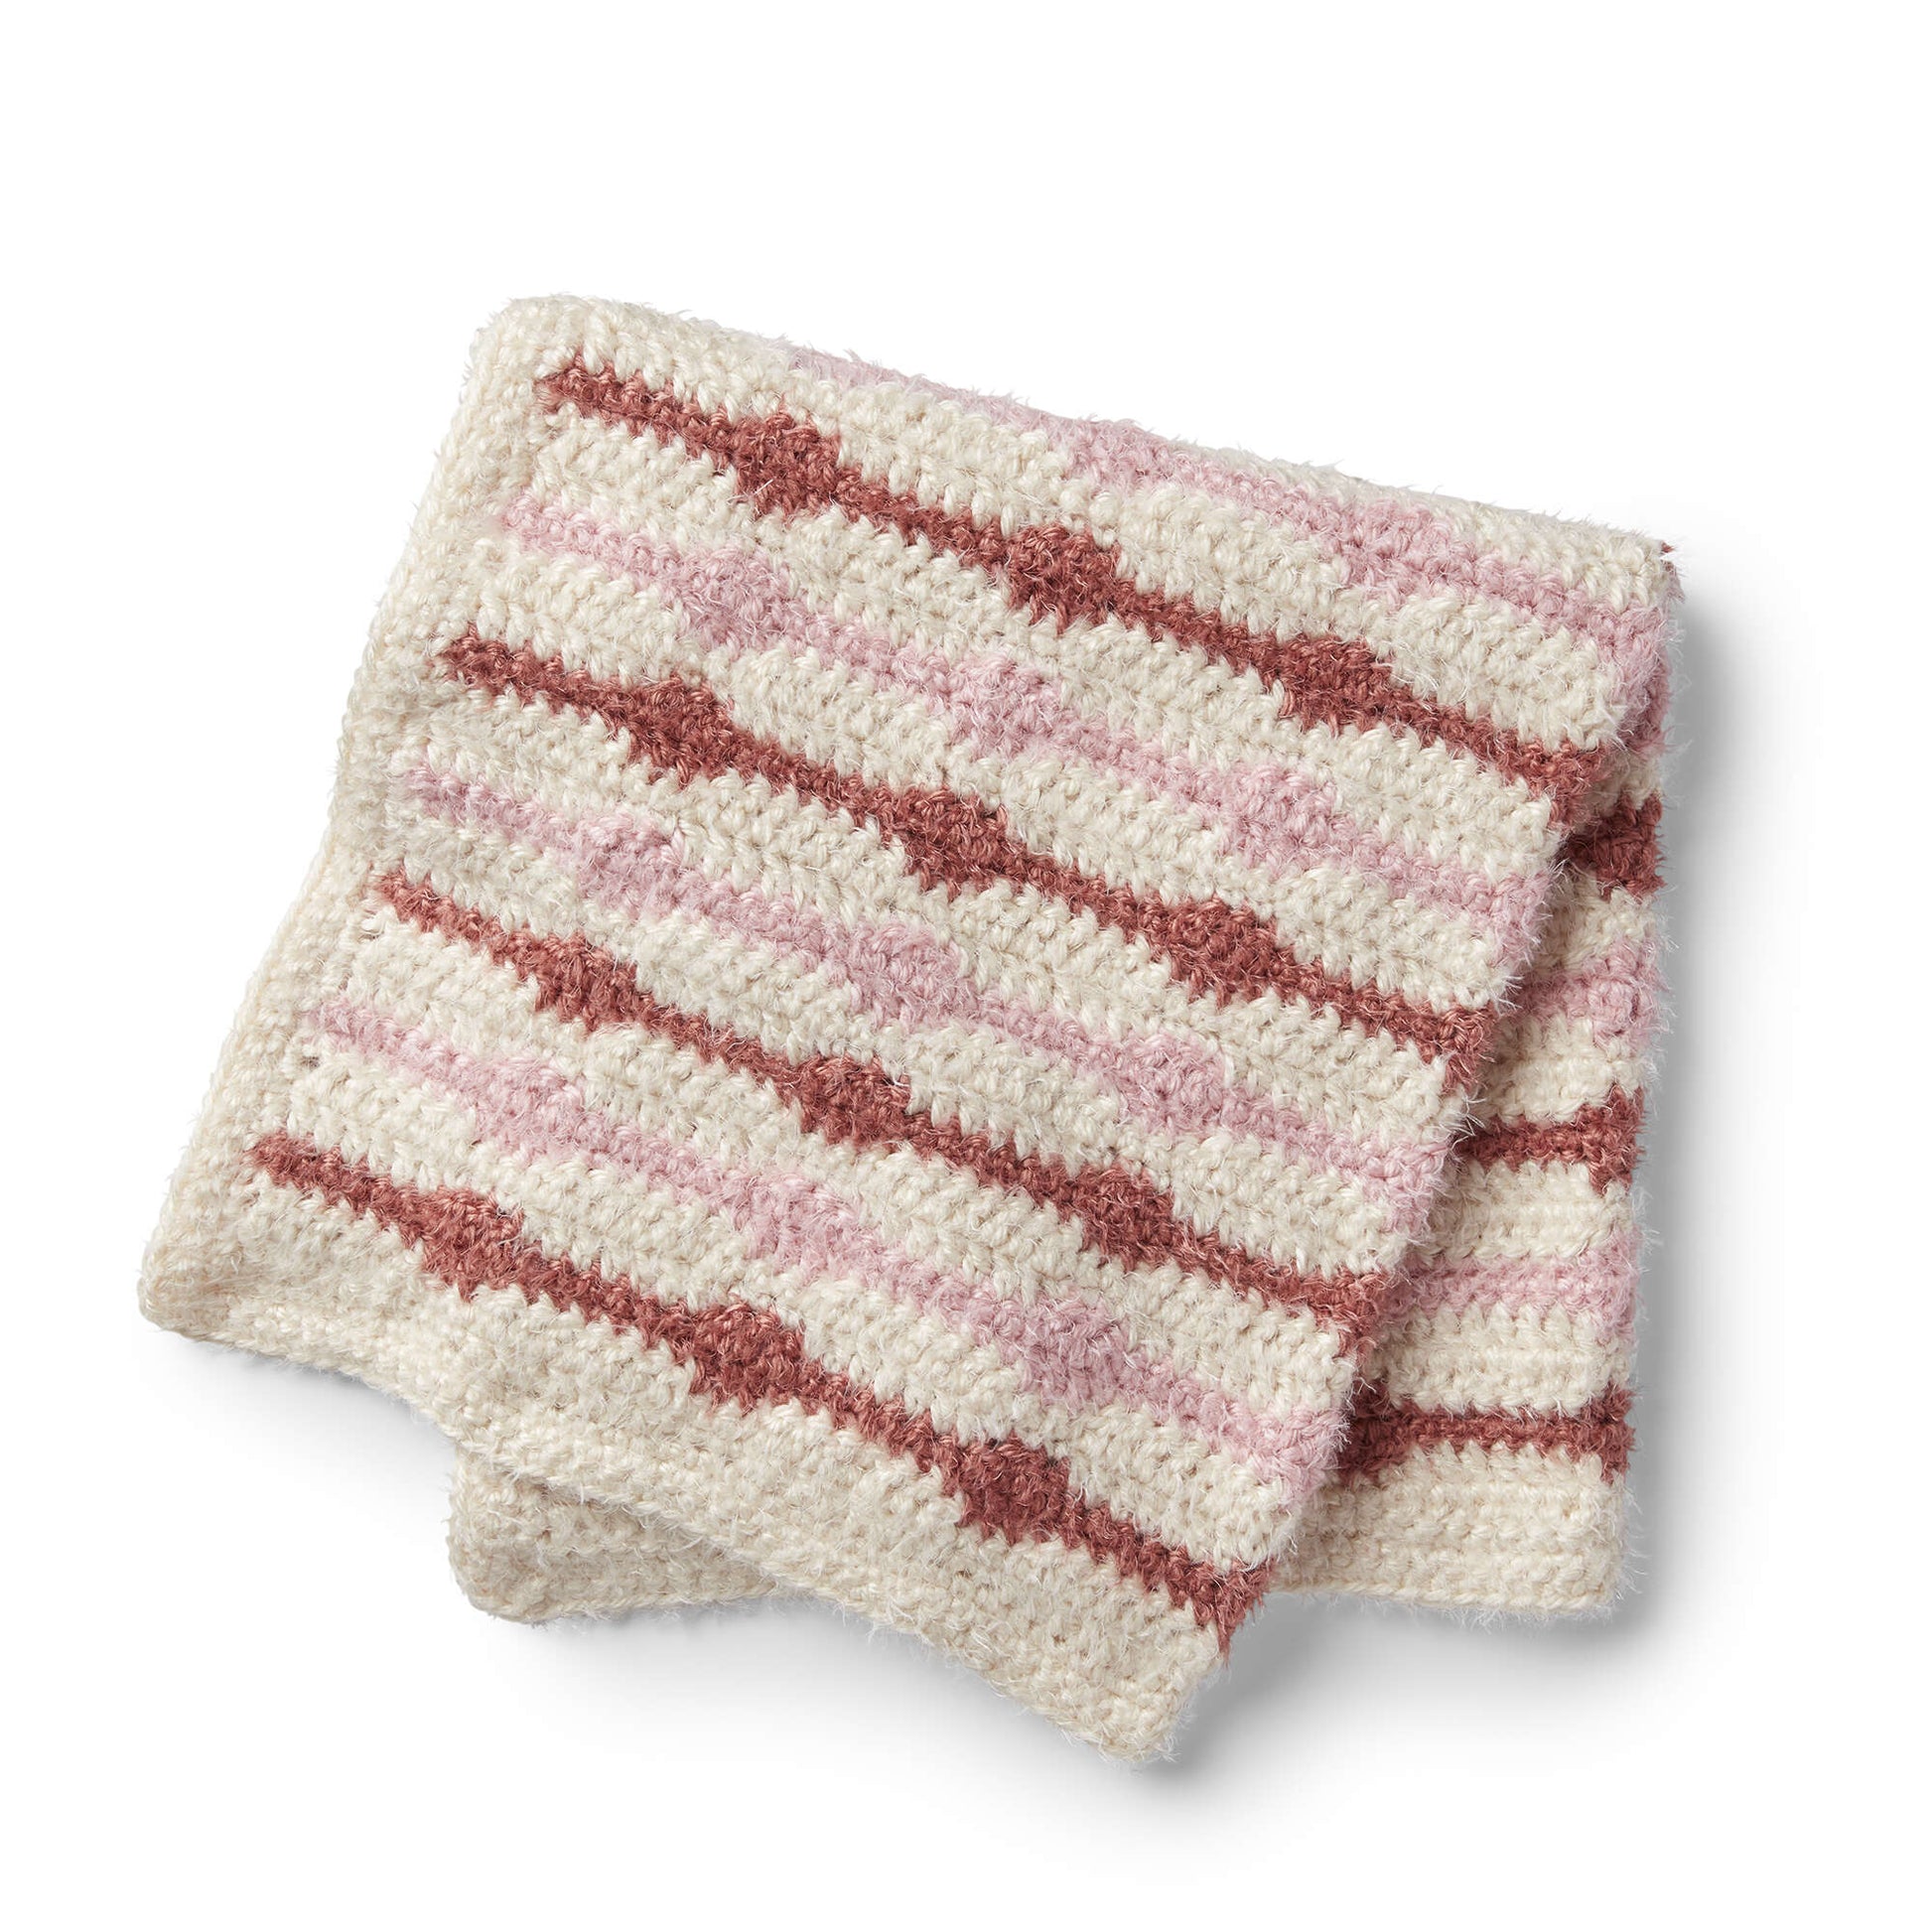 Free Red Heart Crochet Friendship Baby Blanket Pattern